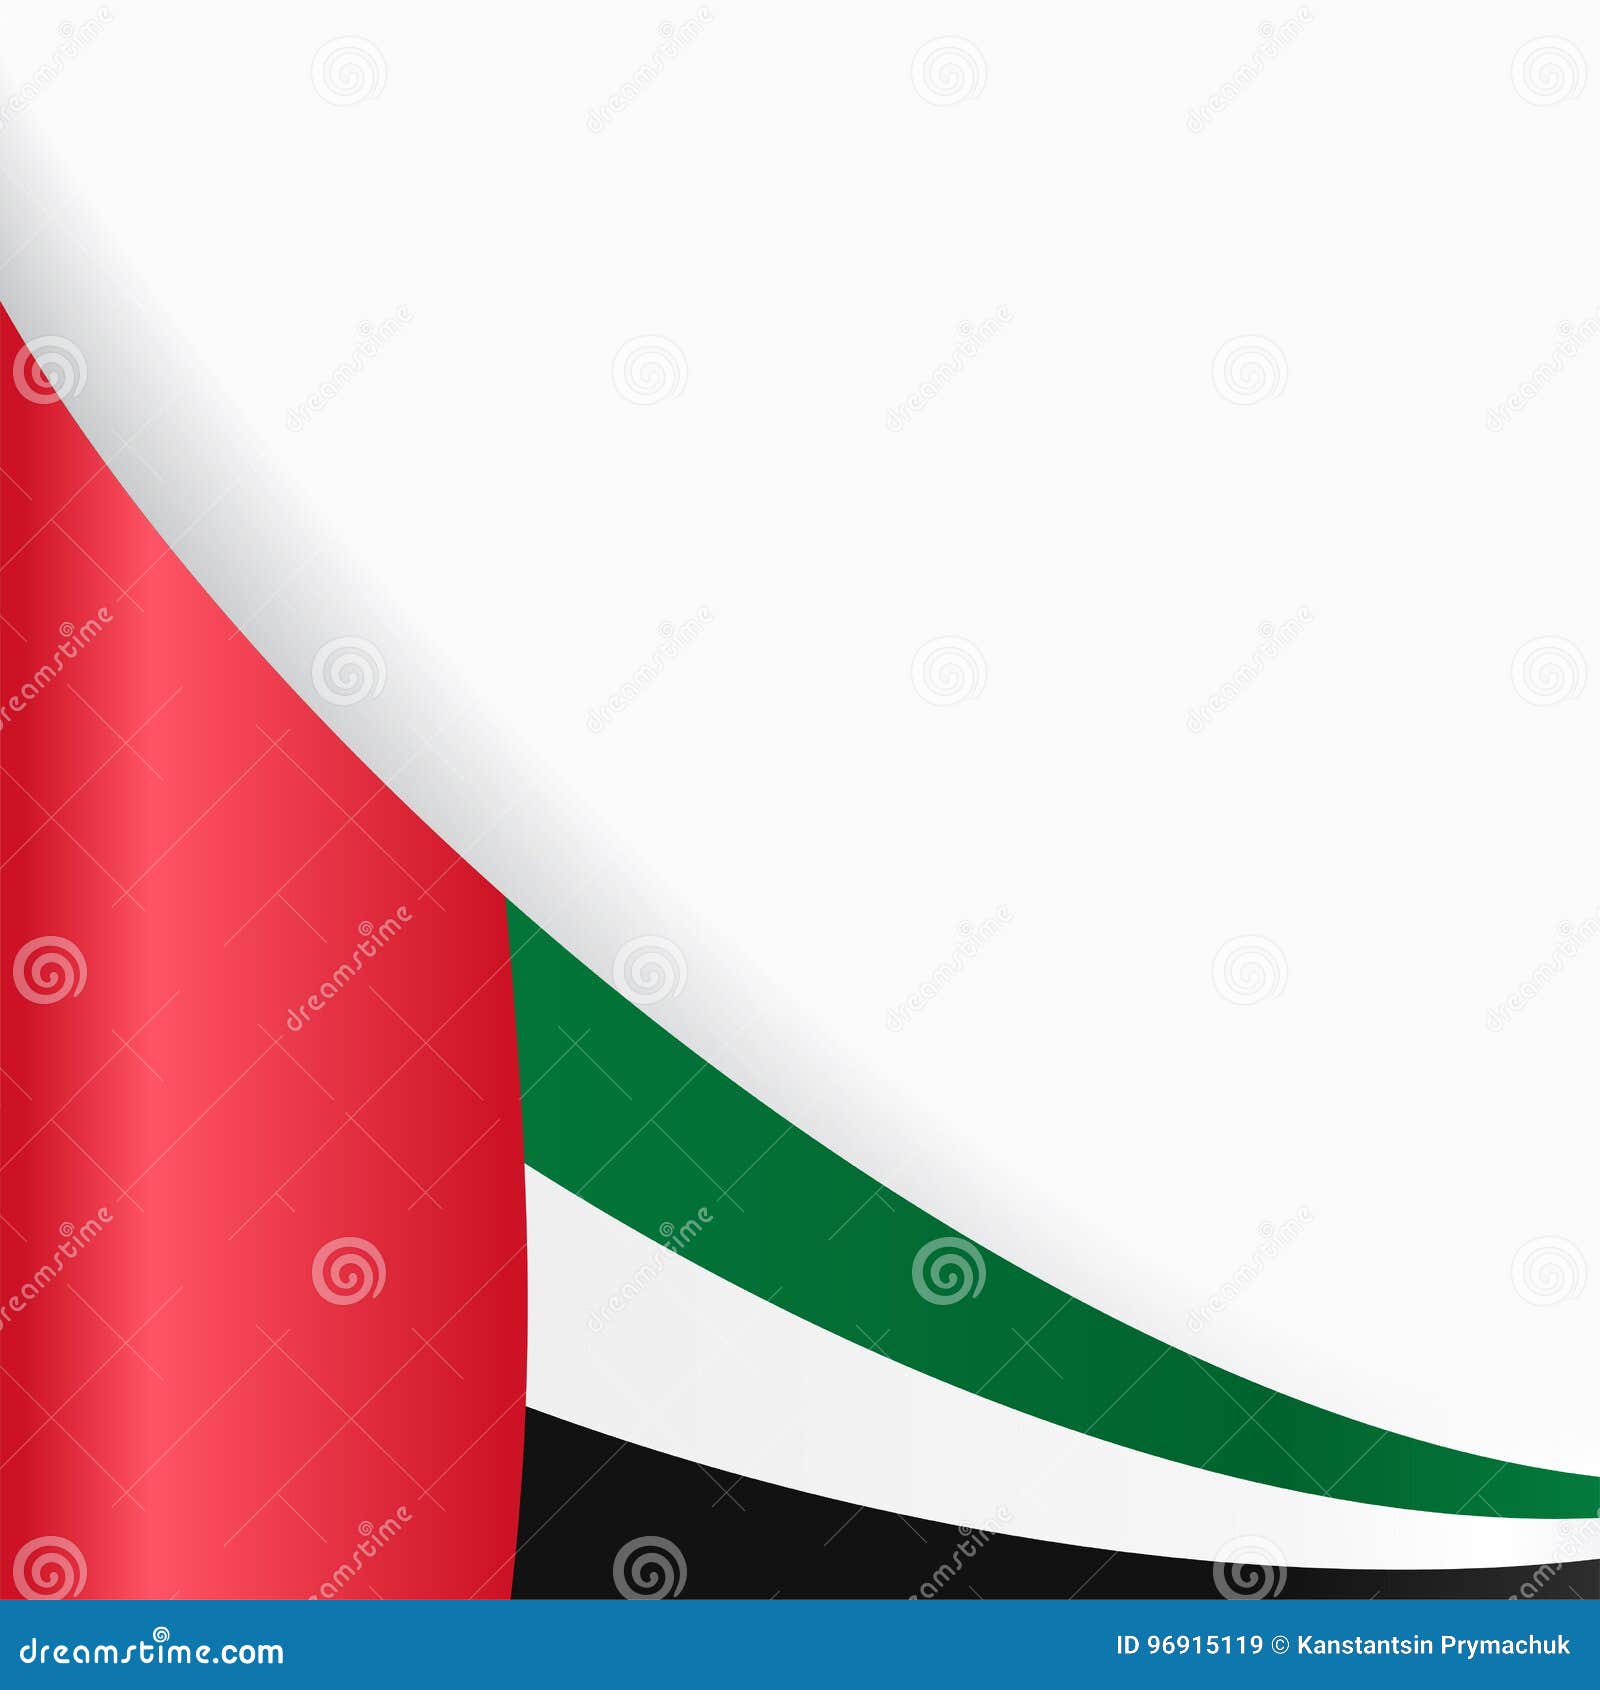 Nền cờ UAE làm lưới nền cho trang web hoặc bài thuyết trình của bạn để thể hiện sự tôn trọng và yêu quý đất nước UAE. Với nền cờ UAE sinh động và chất lượng cao, bạn có thể tạo ra một bầu không khí chuyên nghiệp và tôn vinh đất nước UAE.